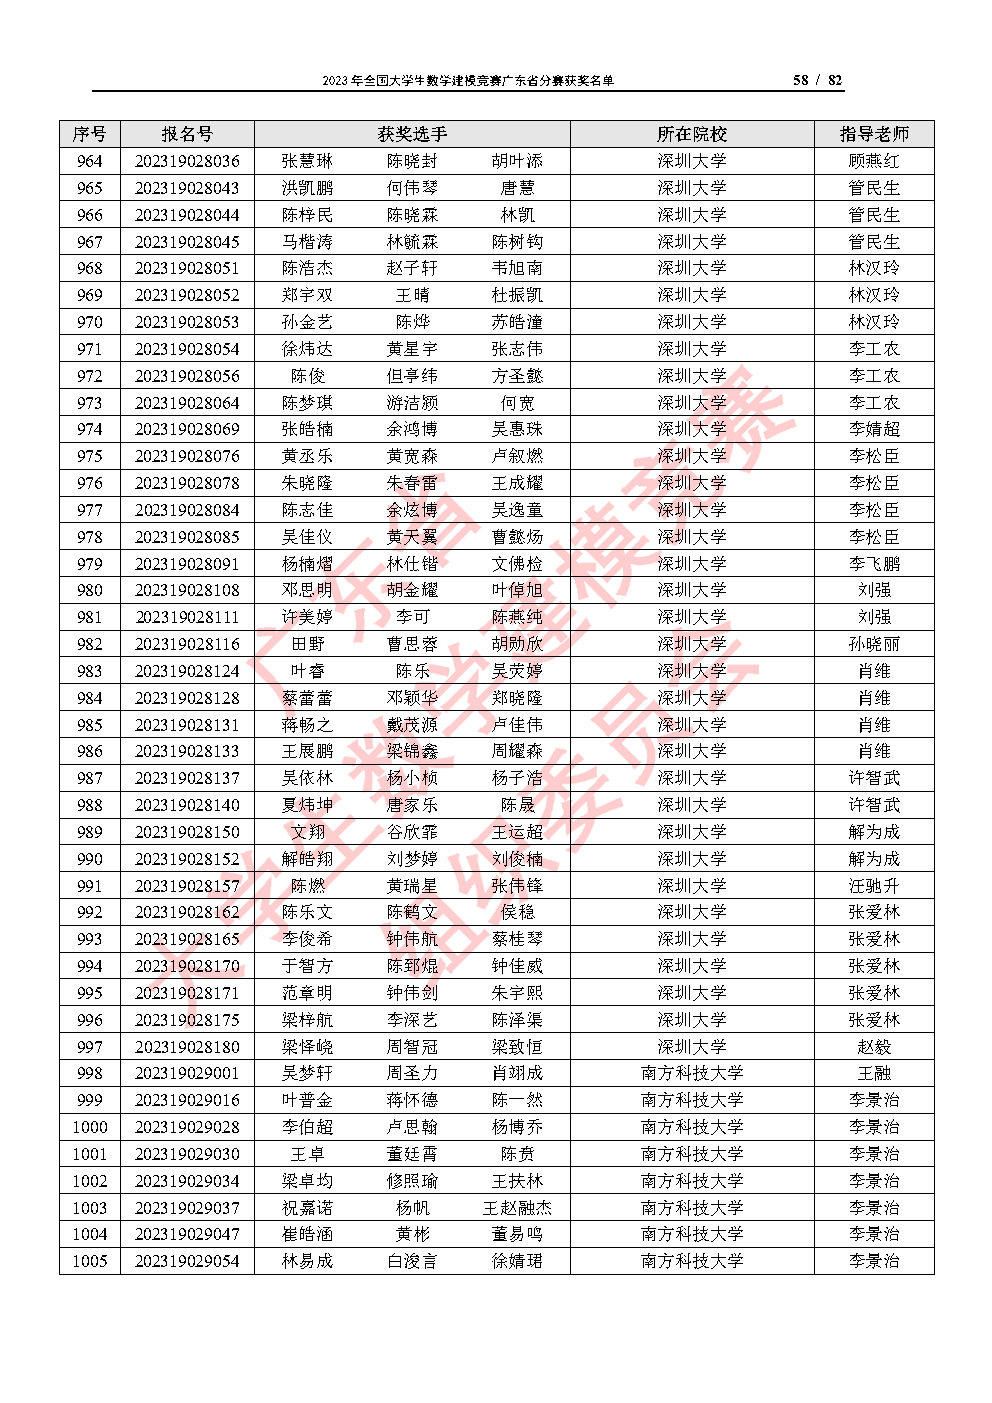 2023年全国大学生数学建模竞赛广东省分赛获奖名单_Page58.jpg